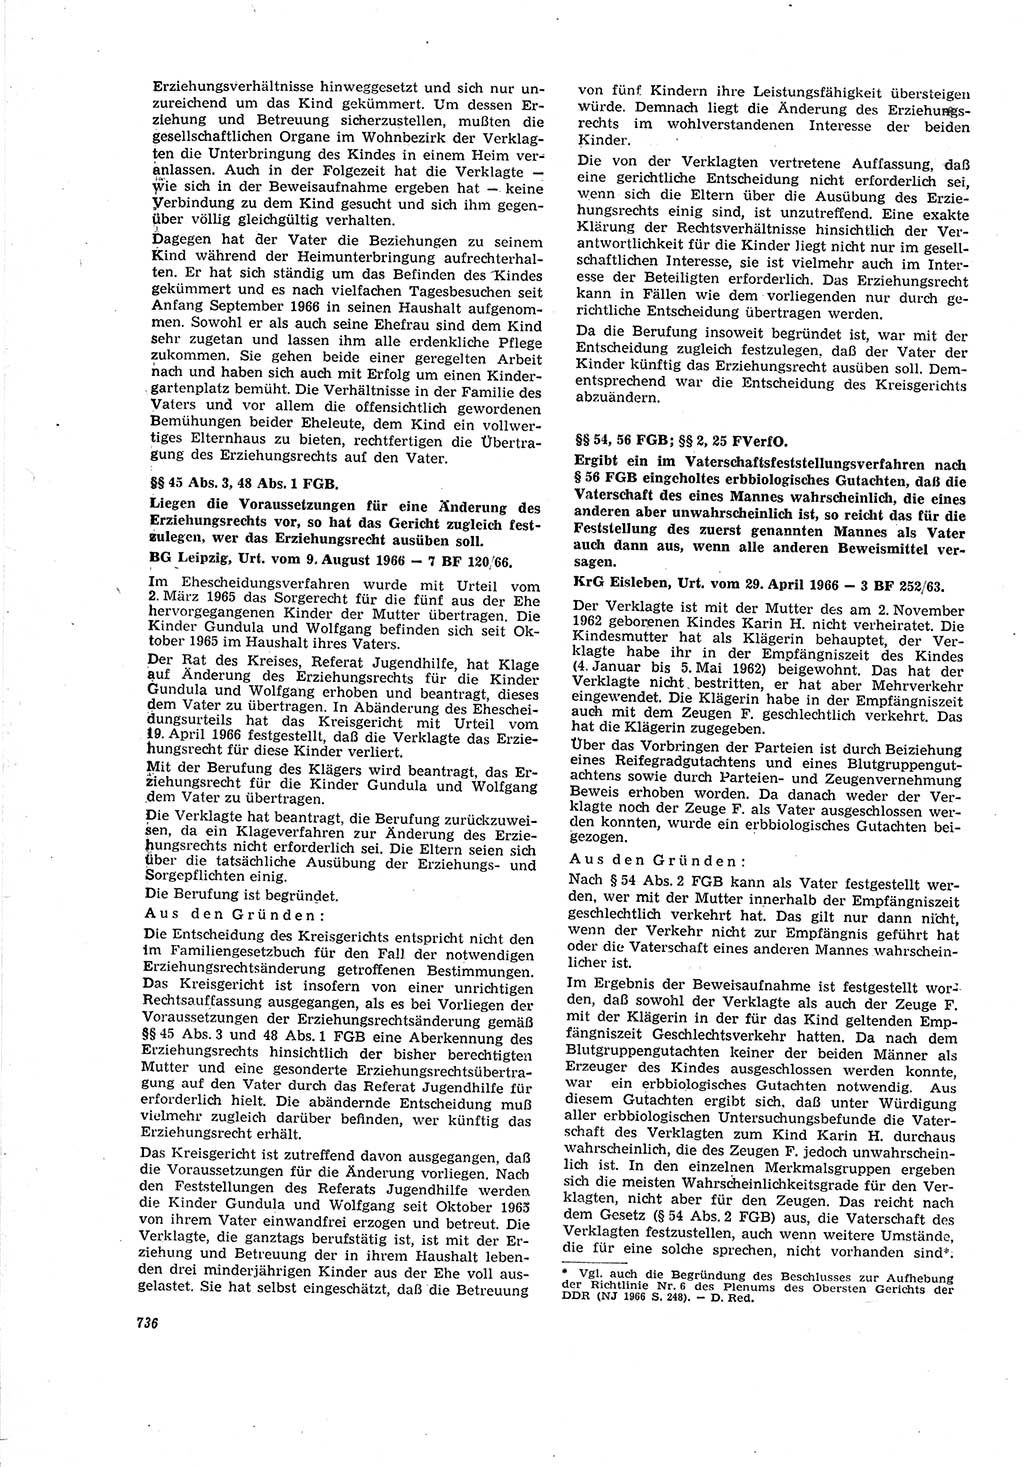 Neue Justiz (NJ), Zeitschrift für Recht und Rechtswissenschaft [Deutsche Demokratische Republik (DDR)], 20. Jahrgang 1966, Seite 736 (NJ DDR 1966, S. 736)